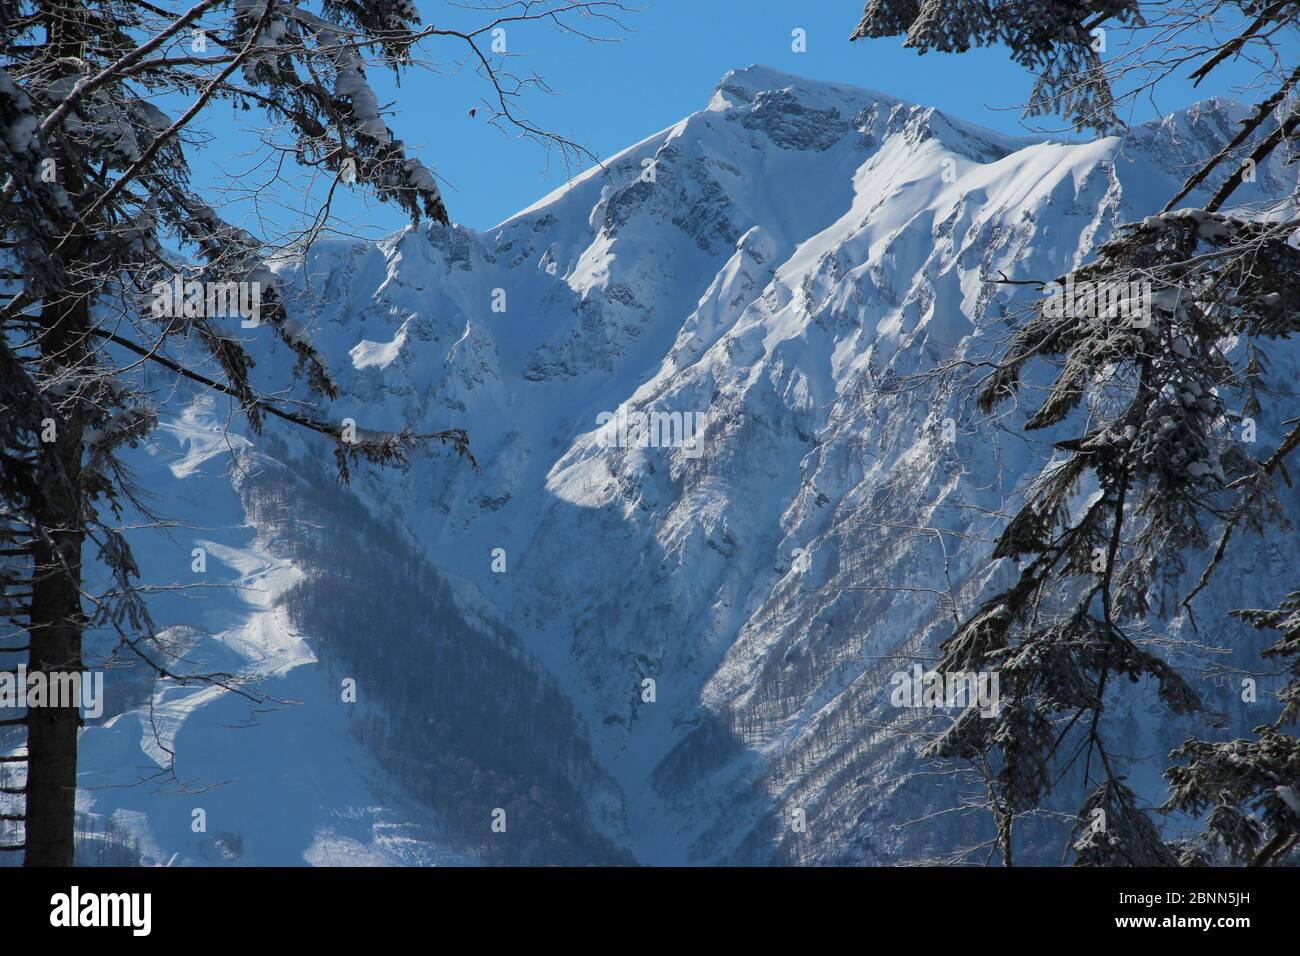 Des montagnes enneigées entourant Rosa Khutor au nord de Sotchi pendant l'hiver en Russie Banque D'Images